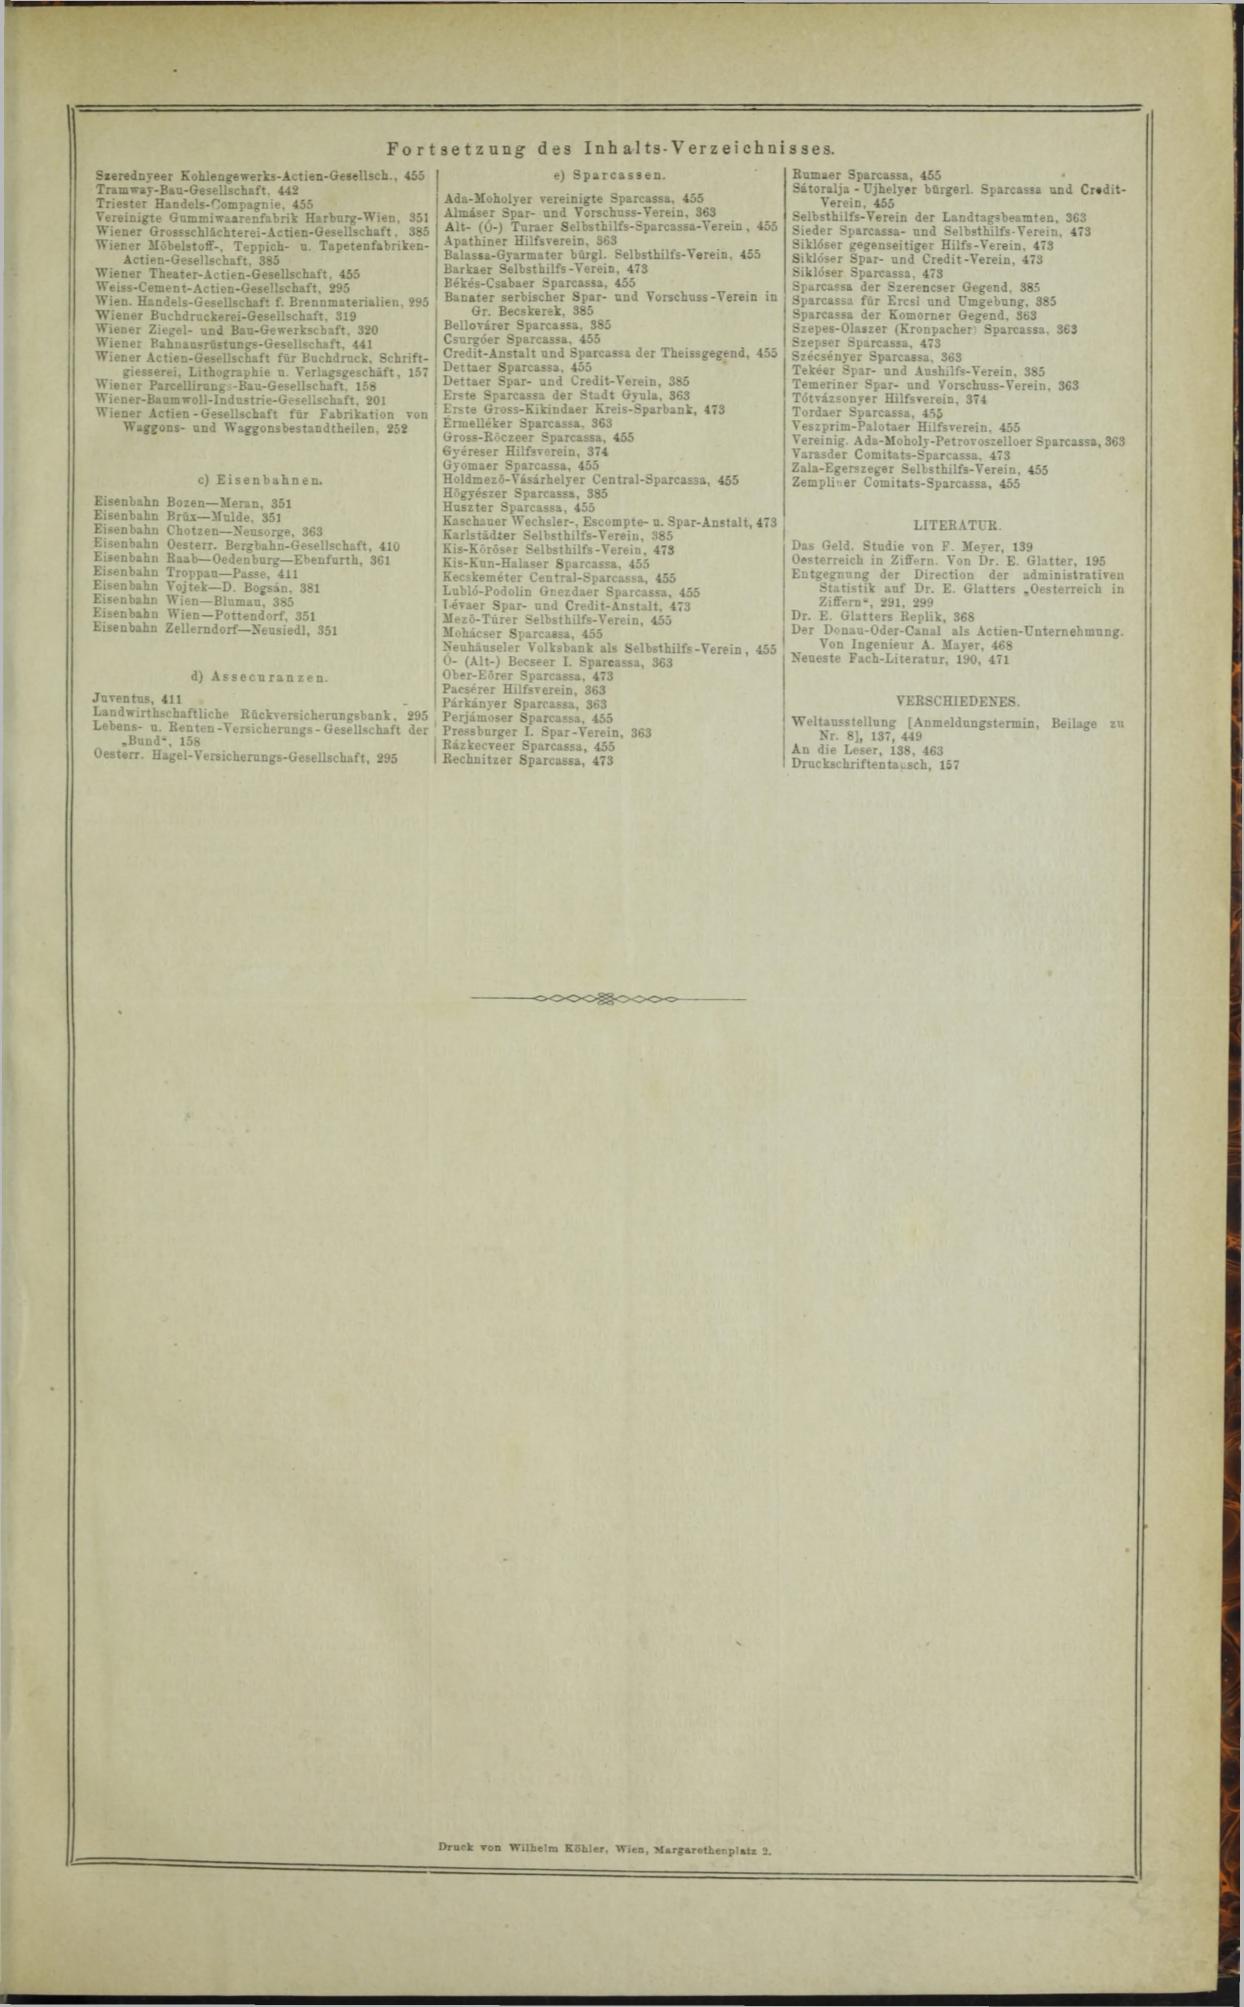 Der Tresor 07.08.1872 - Seite 26